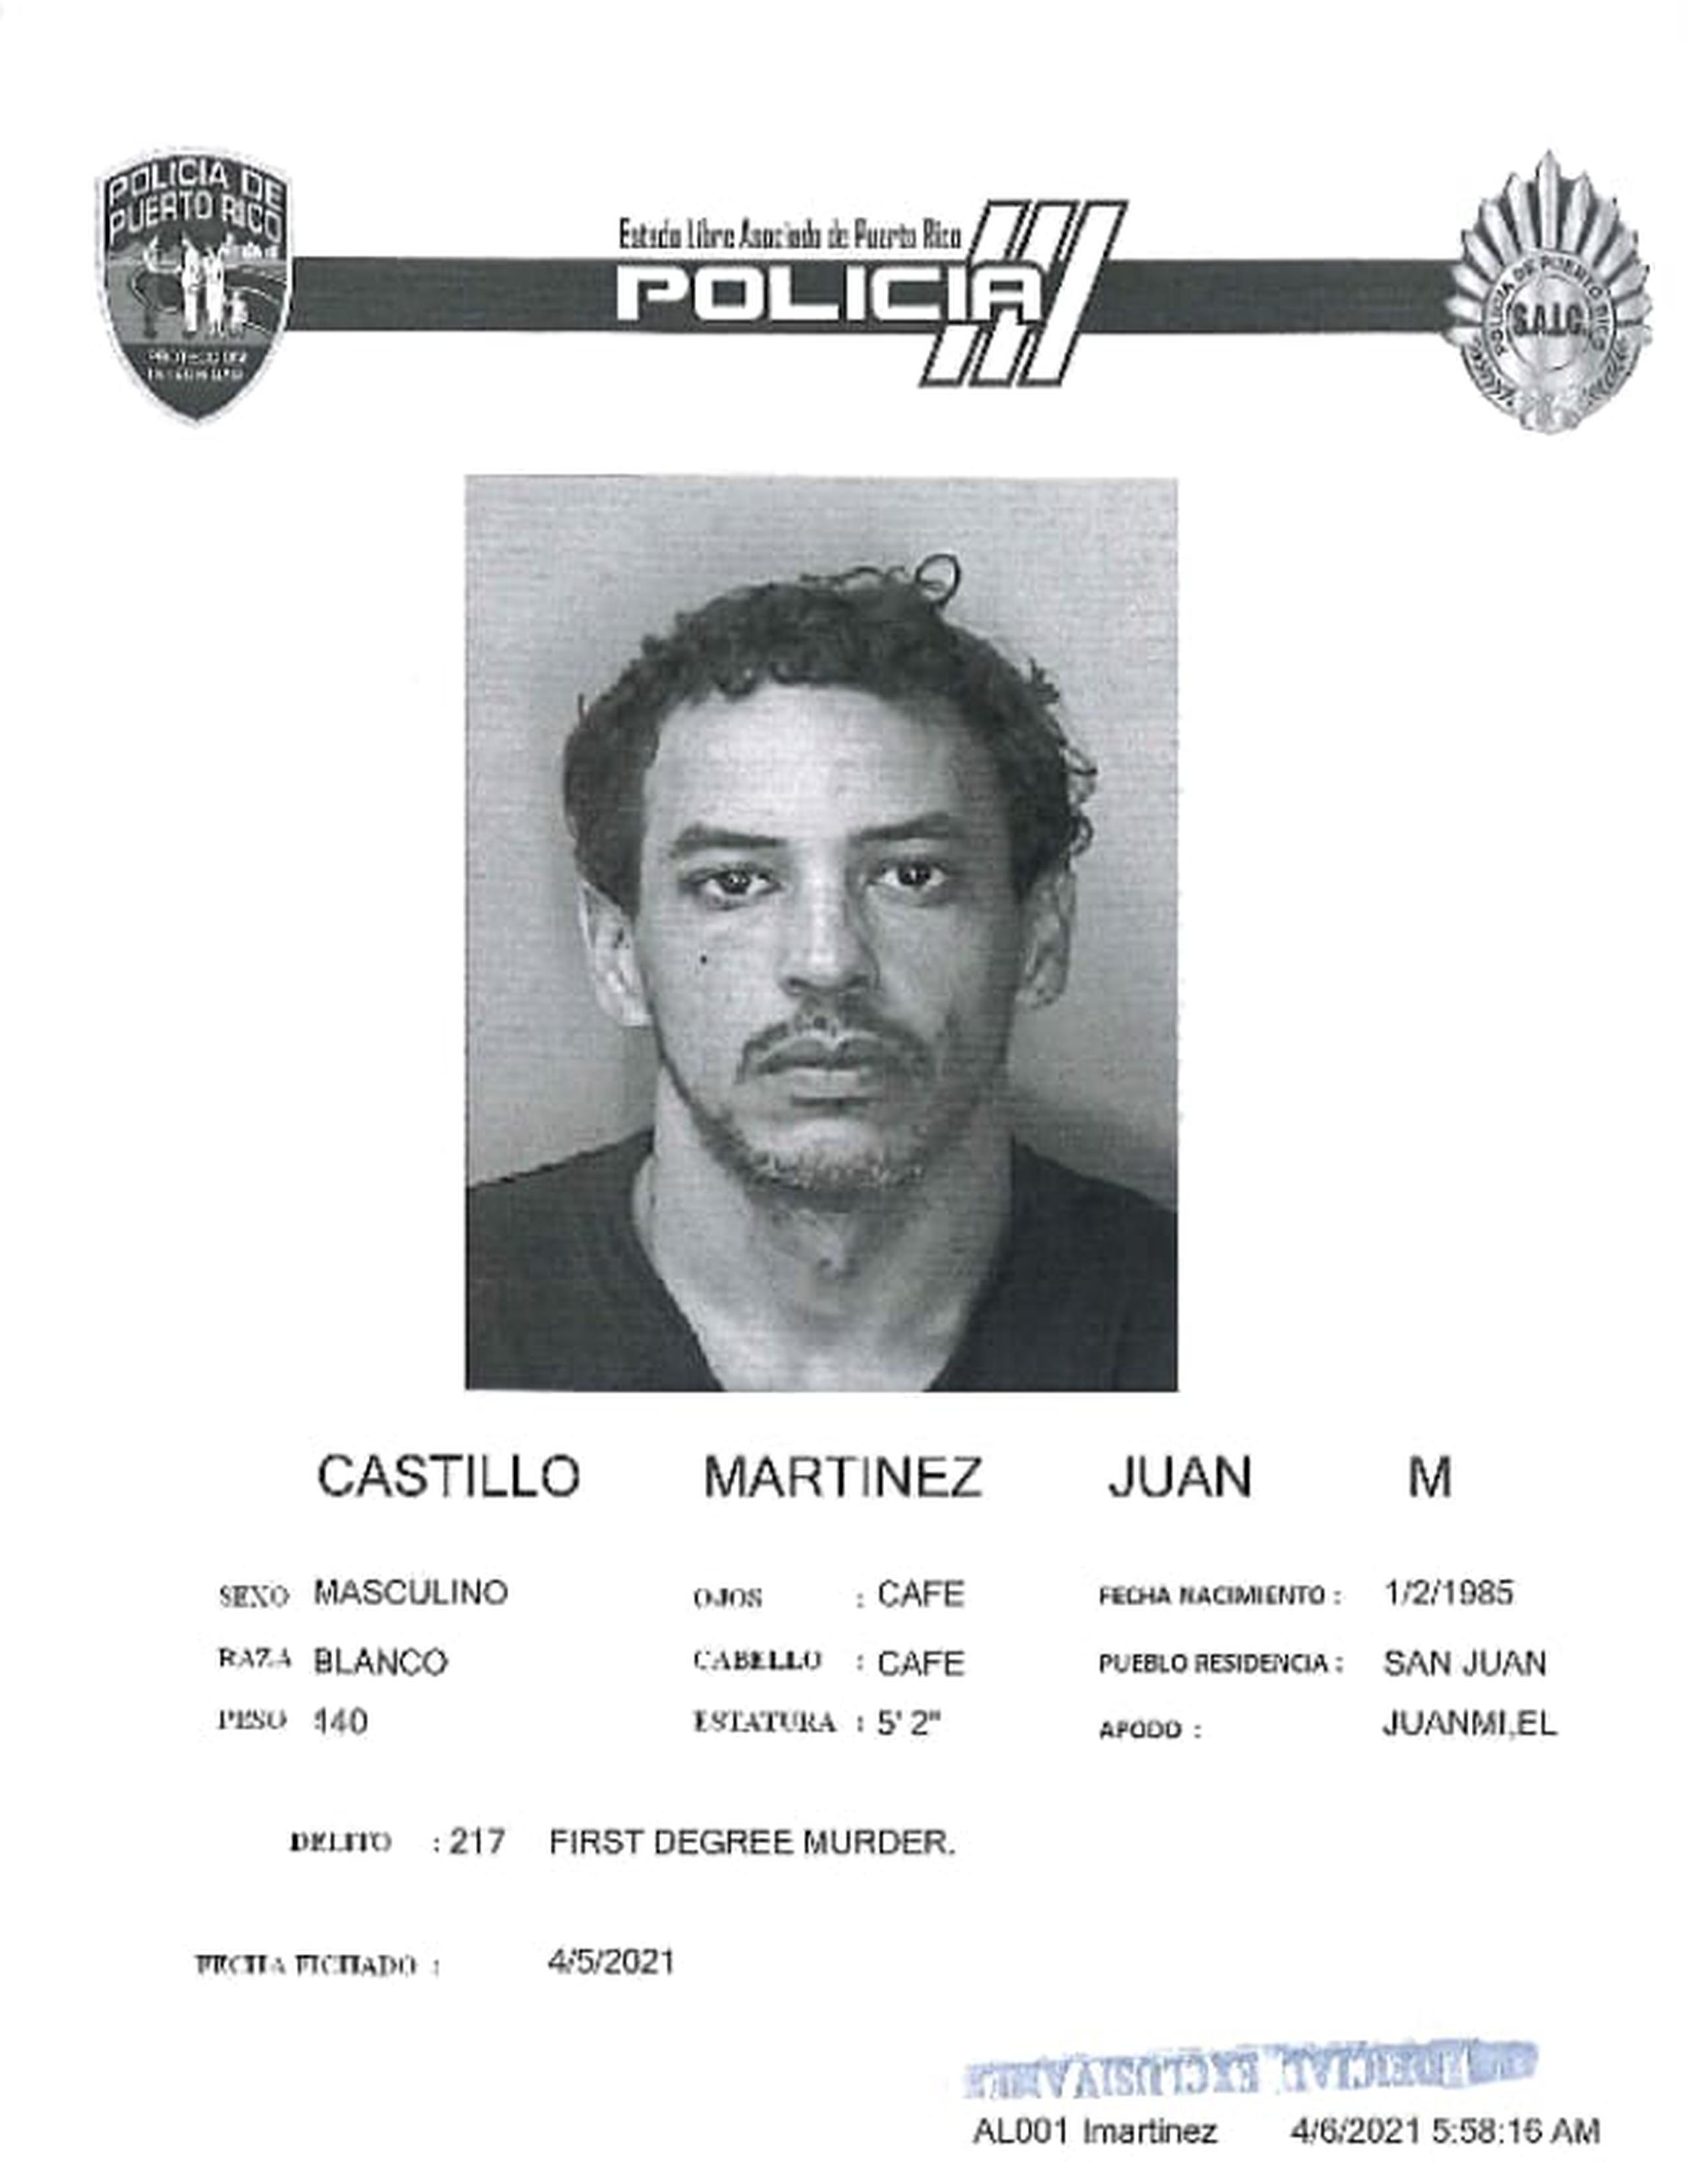 Juan M. Castillo Martínez, de 36 años, fue ingresado en prisión junto a Jacklyn H. Lugo Colón, de 23 años, tras ser acusados por el crimen de una empleada del motel Yess, en Carolina.